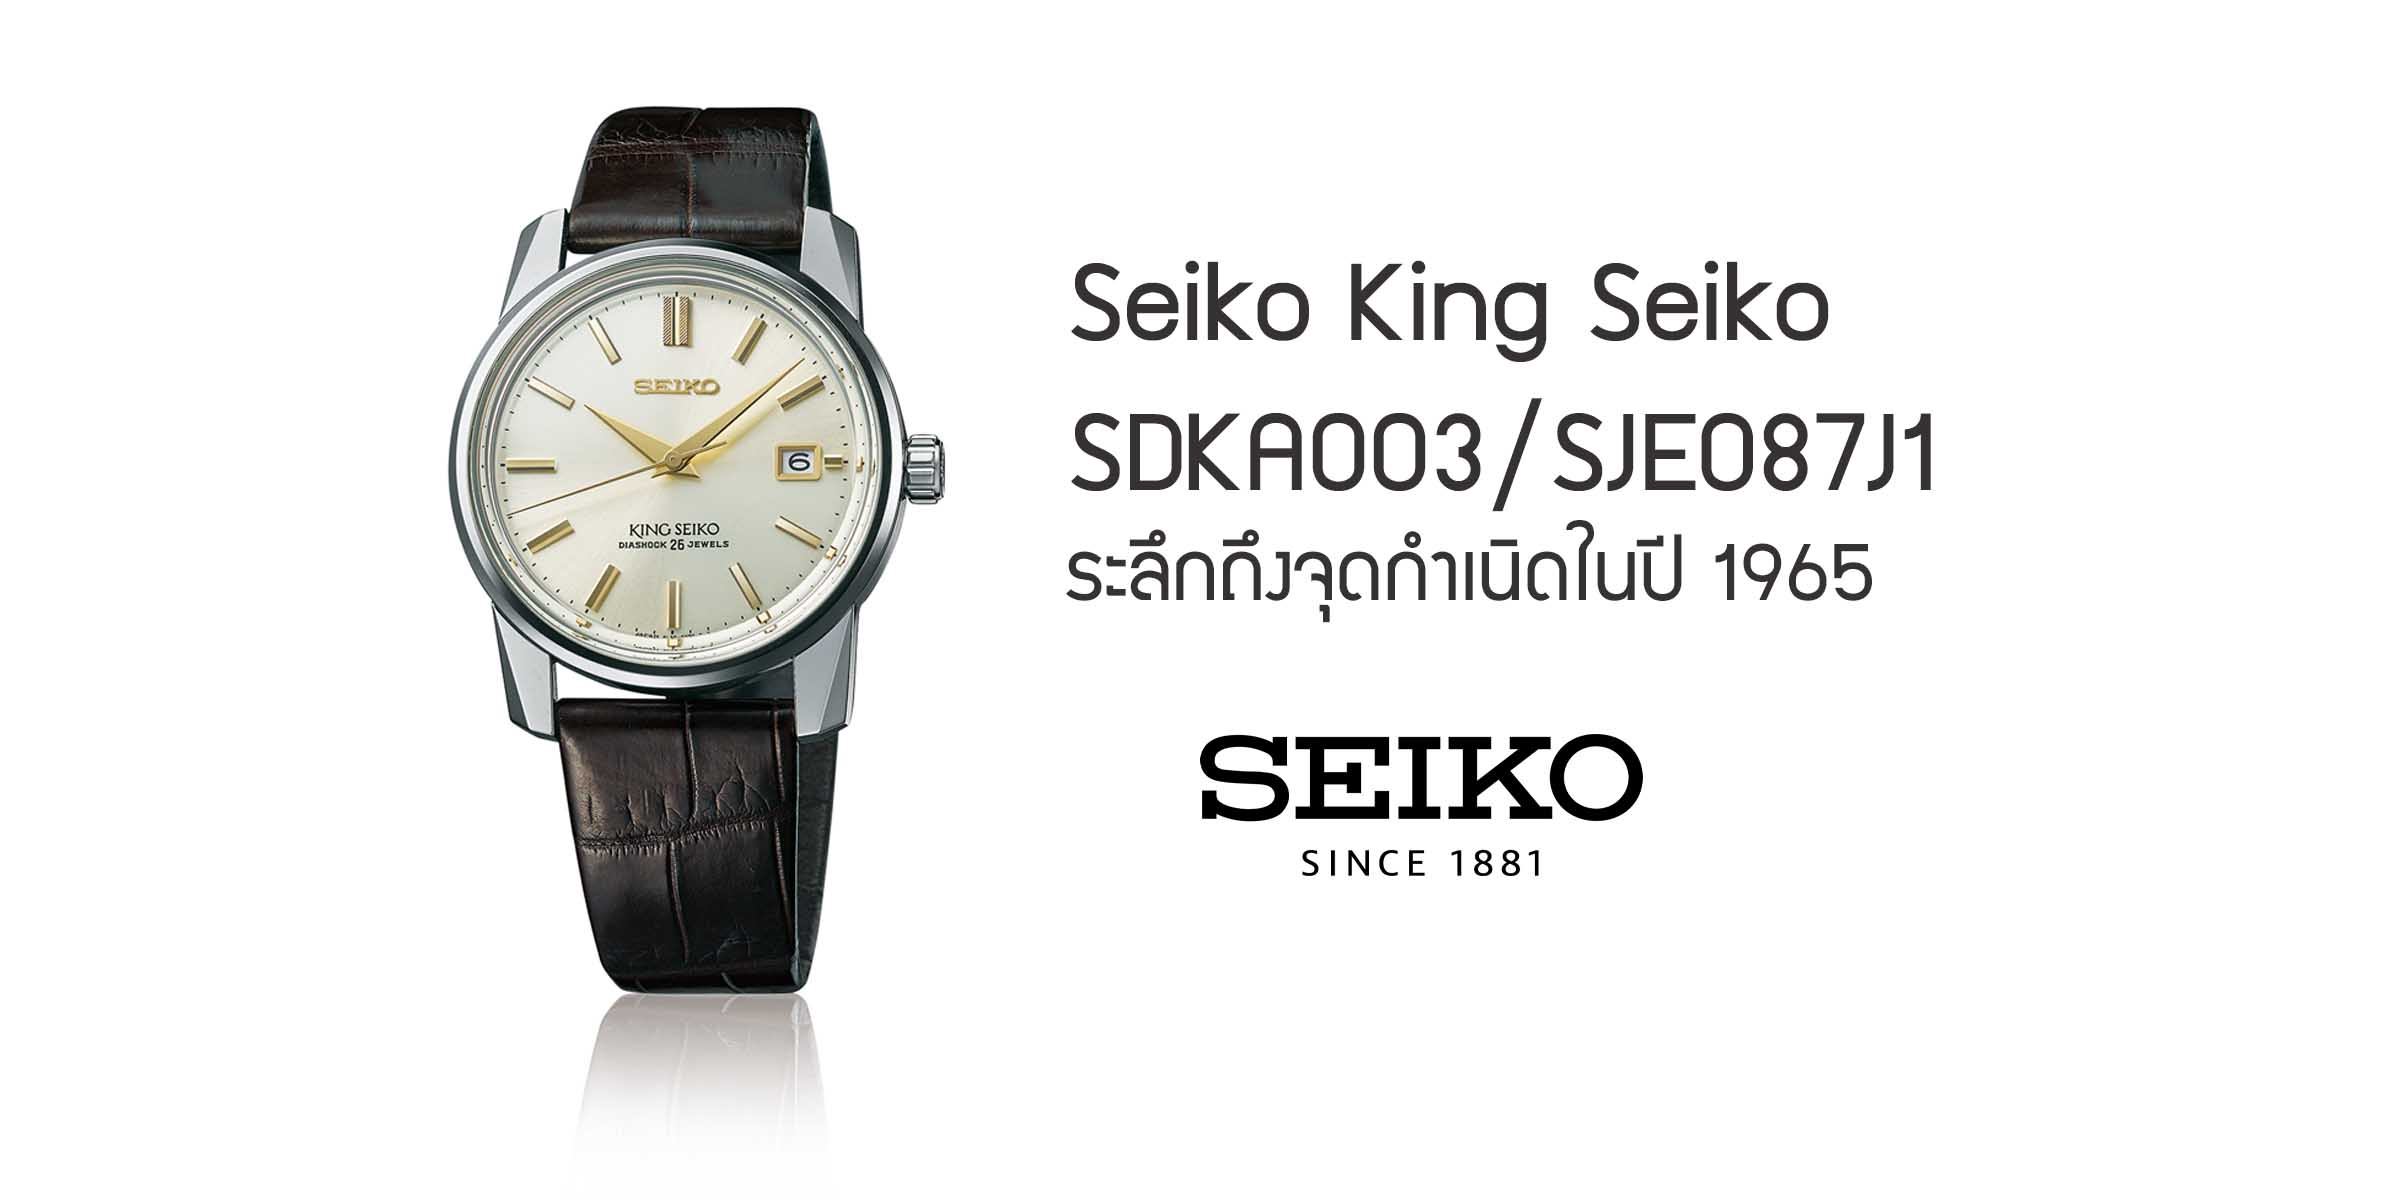 Seiko King Seiko SDKA003